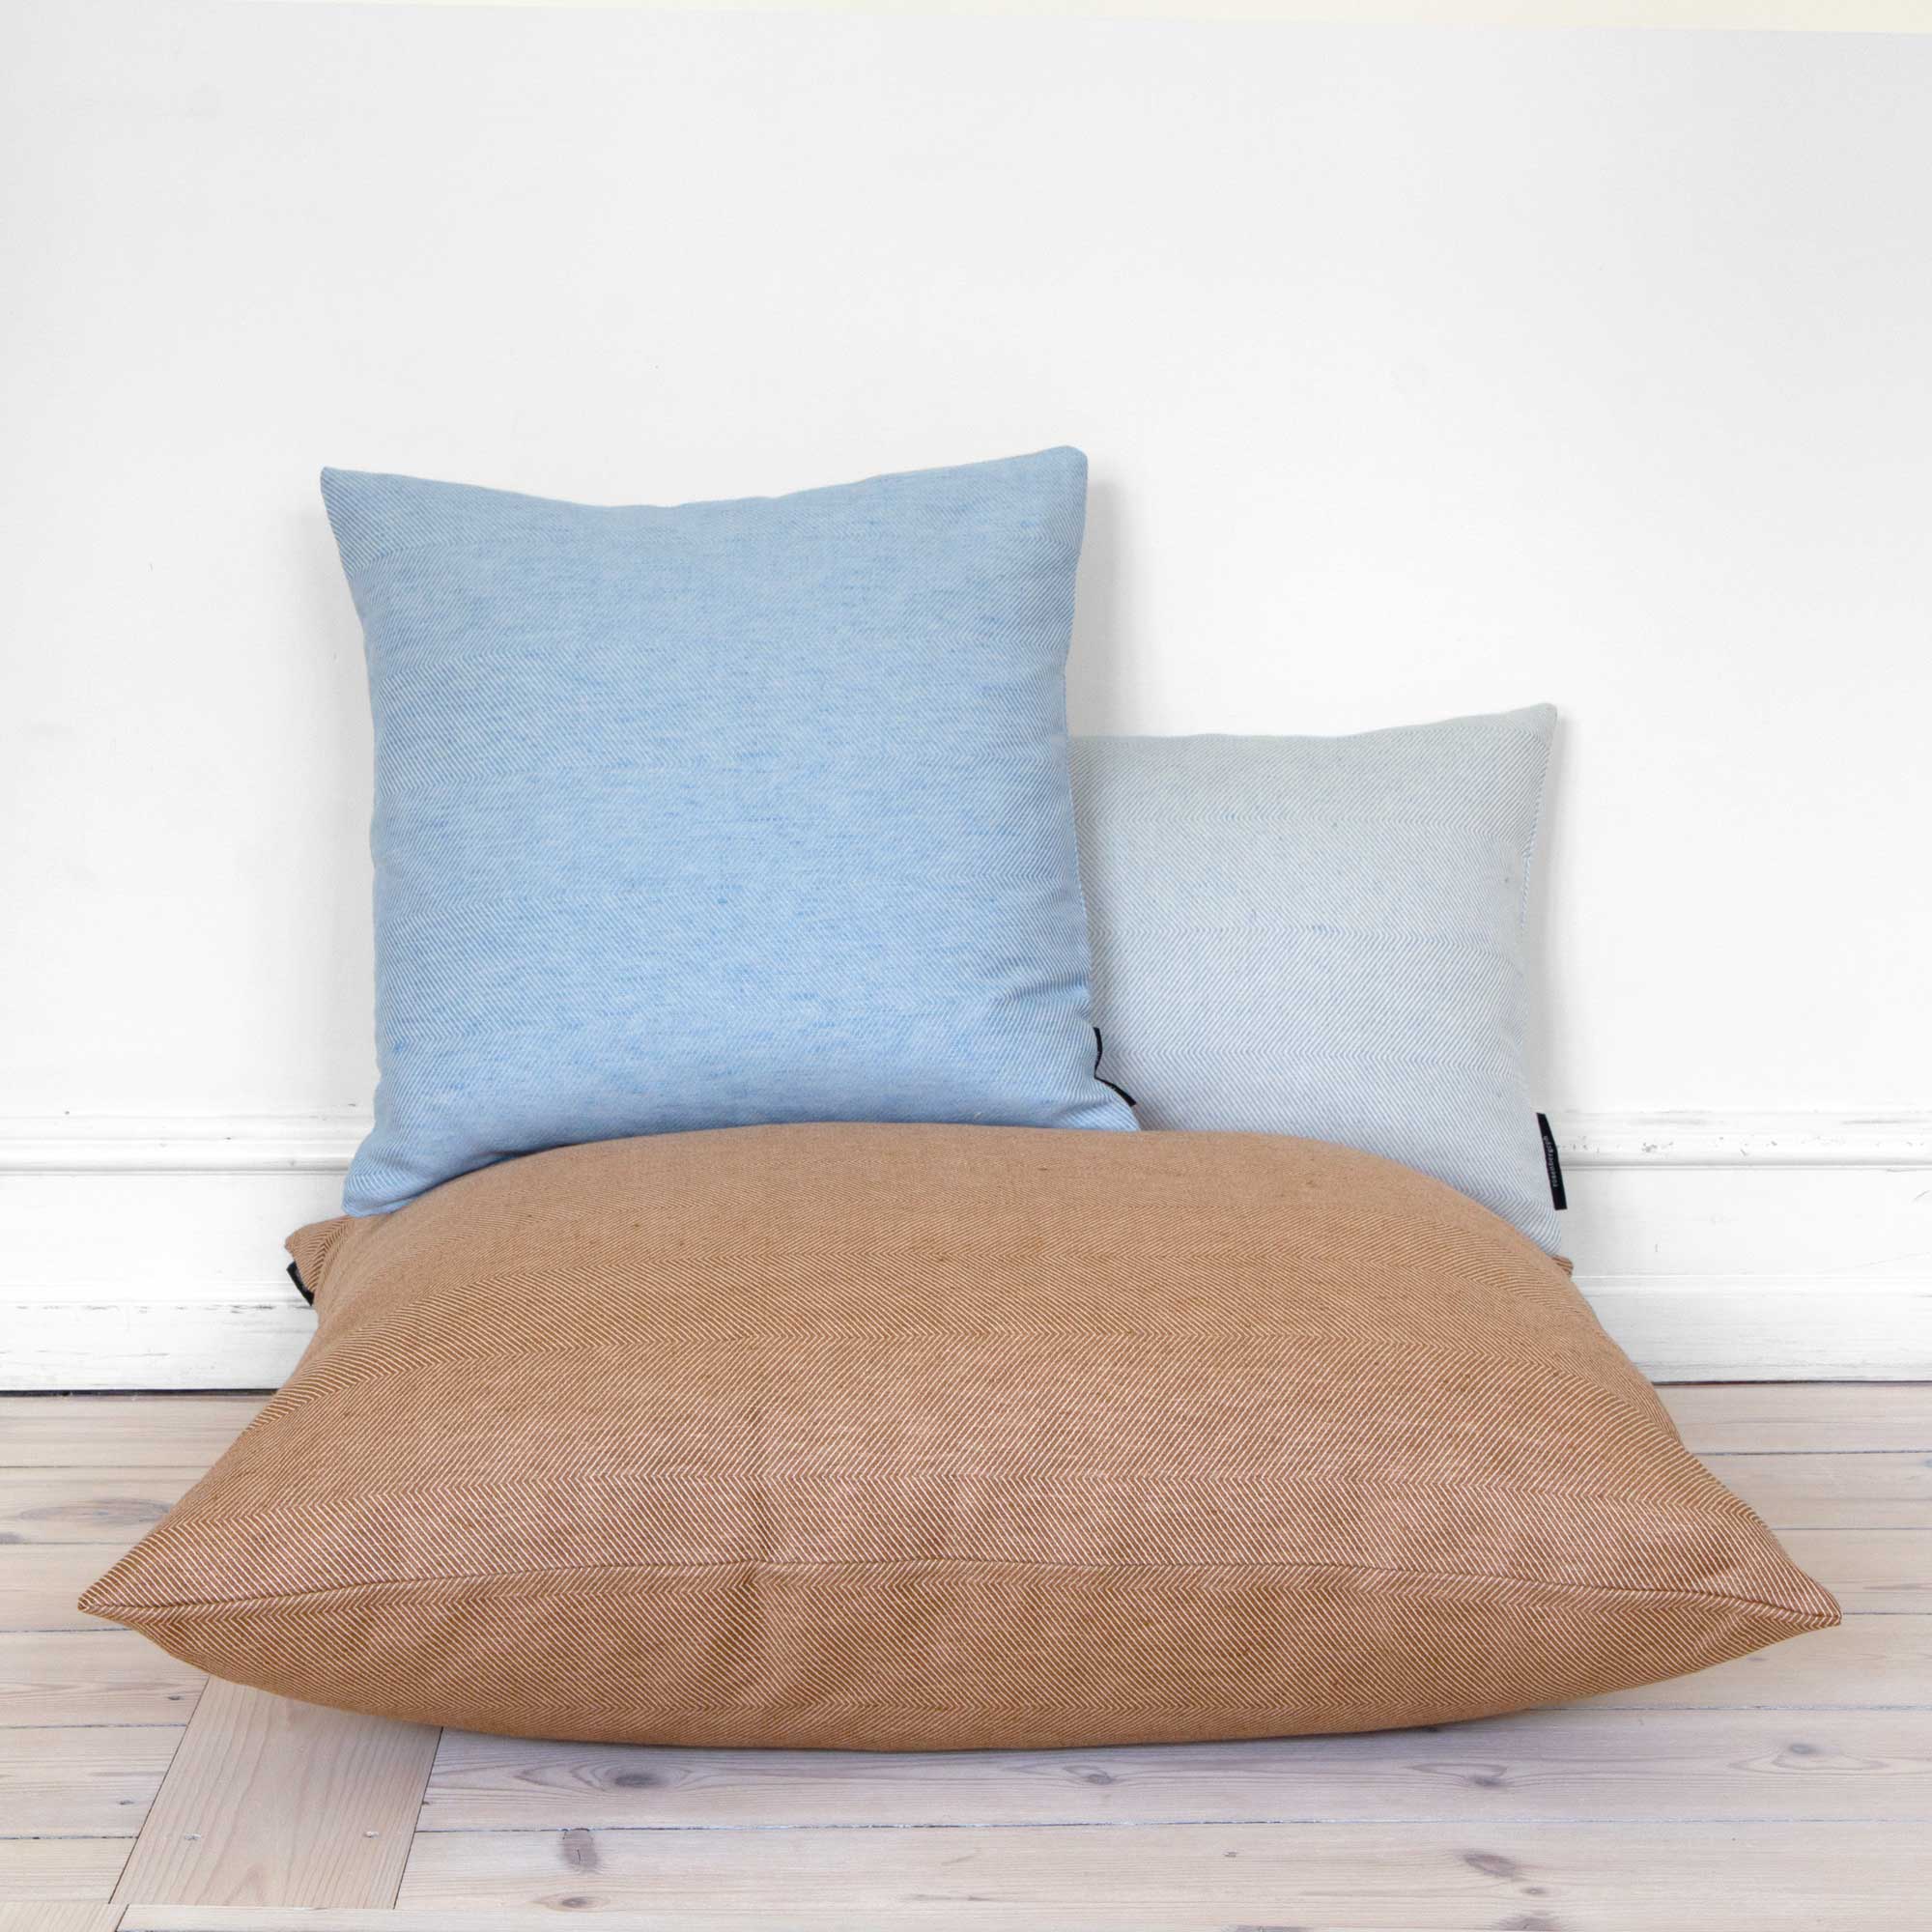 80x80 cm floor cushion linen/cotton Almond, design by Anne Rosenberg, RosenbergCph